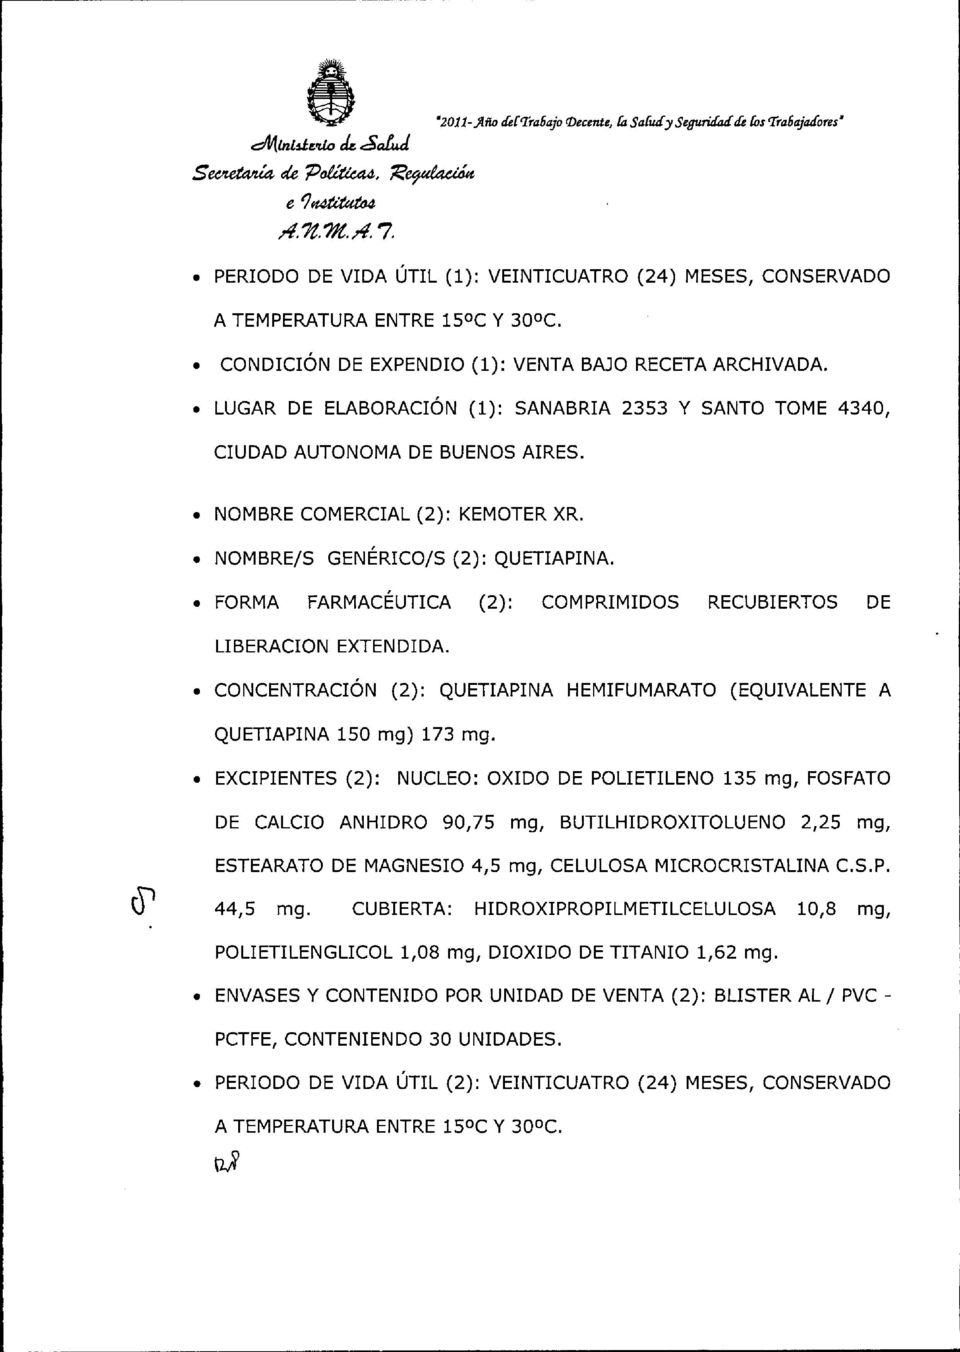 CONDICIÓN DE EXPENDIO (1): VENTA BAJO RECETA ARCHIVADA. LUGAR DE ELABORACIÓN (1): SANABRIA 2353 Y SANTO TOME 4340, CIUDAD AUTONOMA DE BUENOS AIRES. NOMBRE COMERCIAL (2): KEMOTER XR.